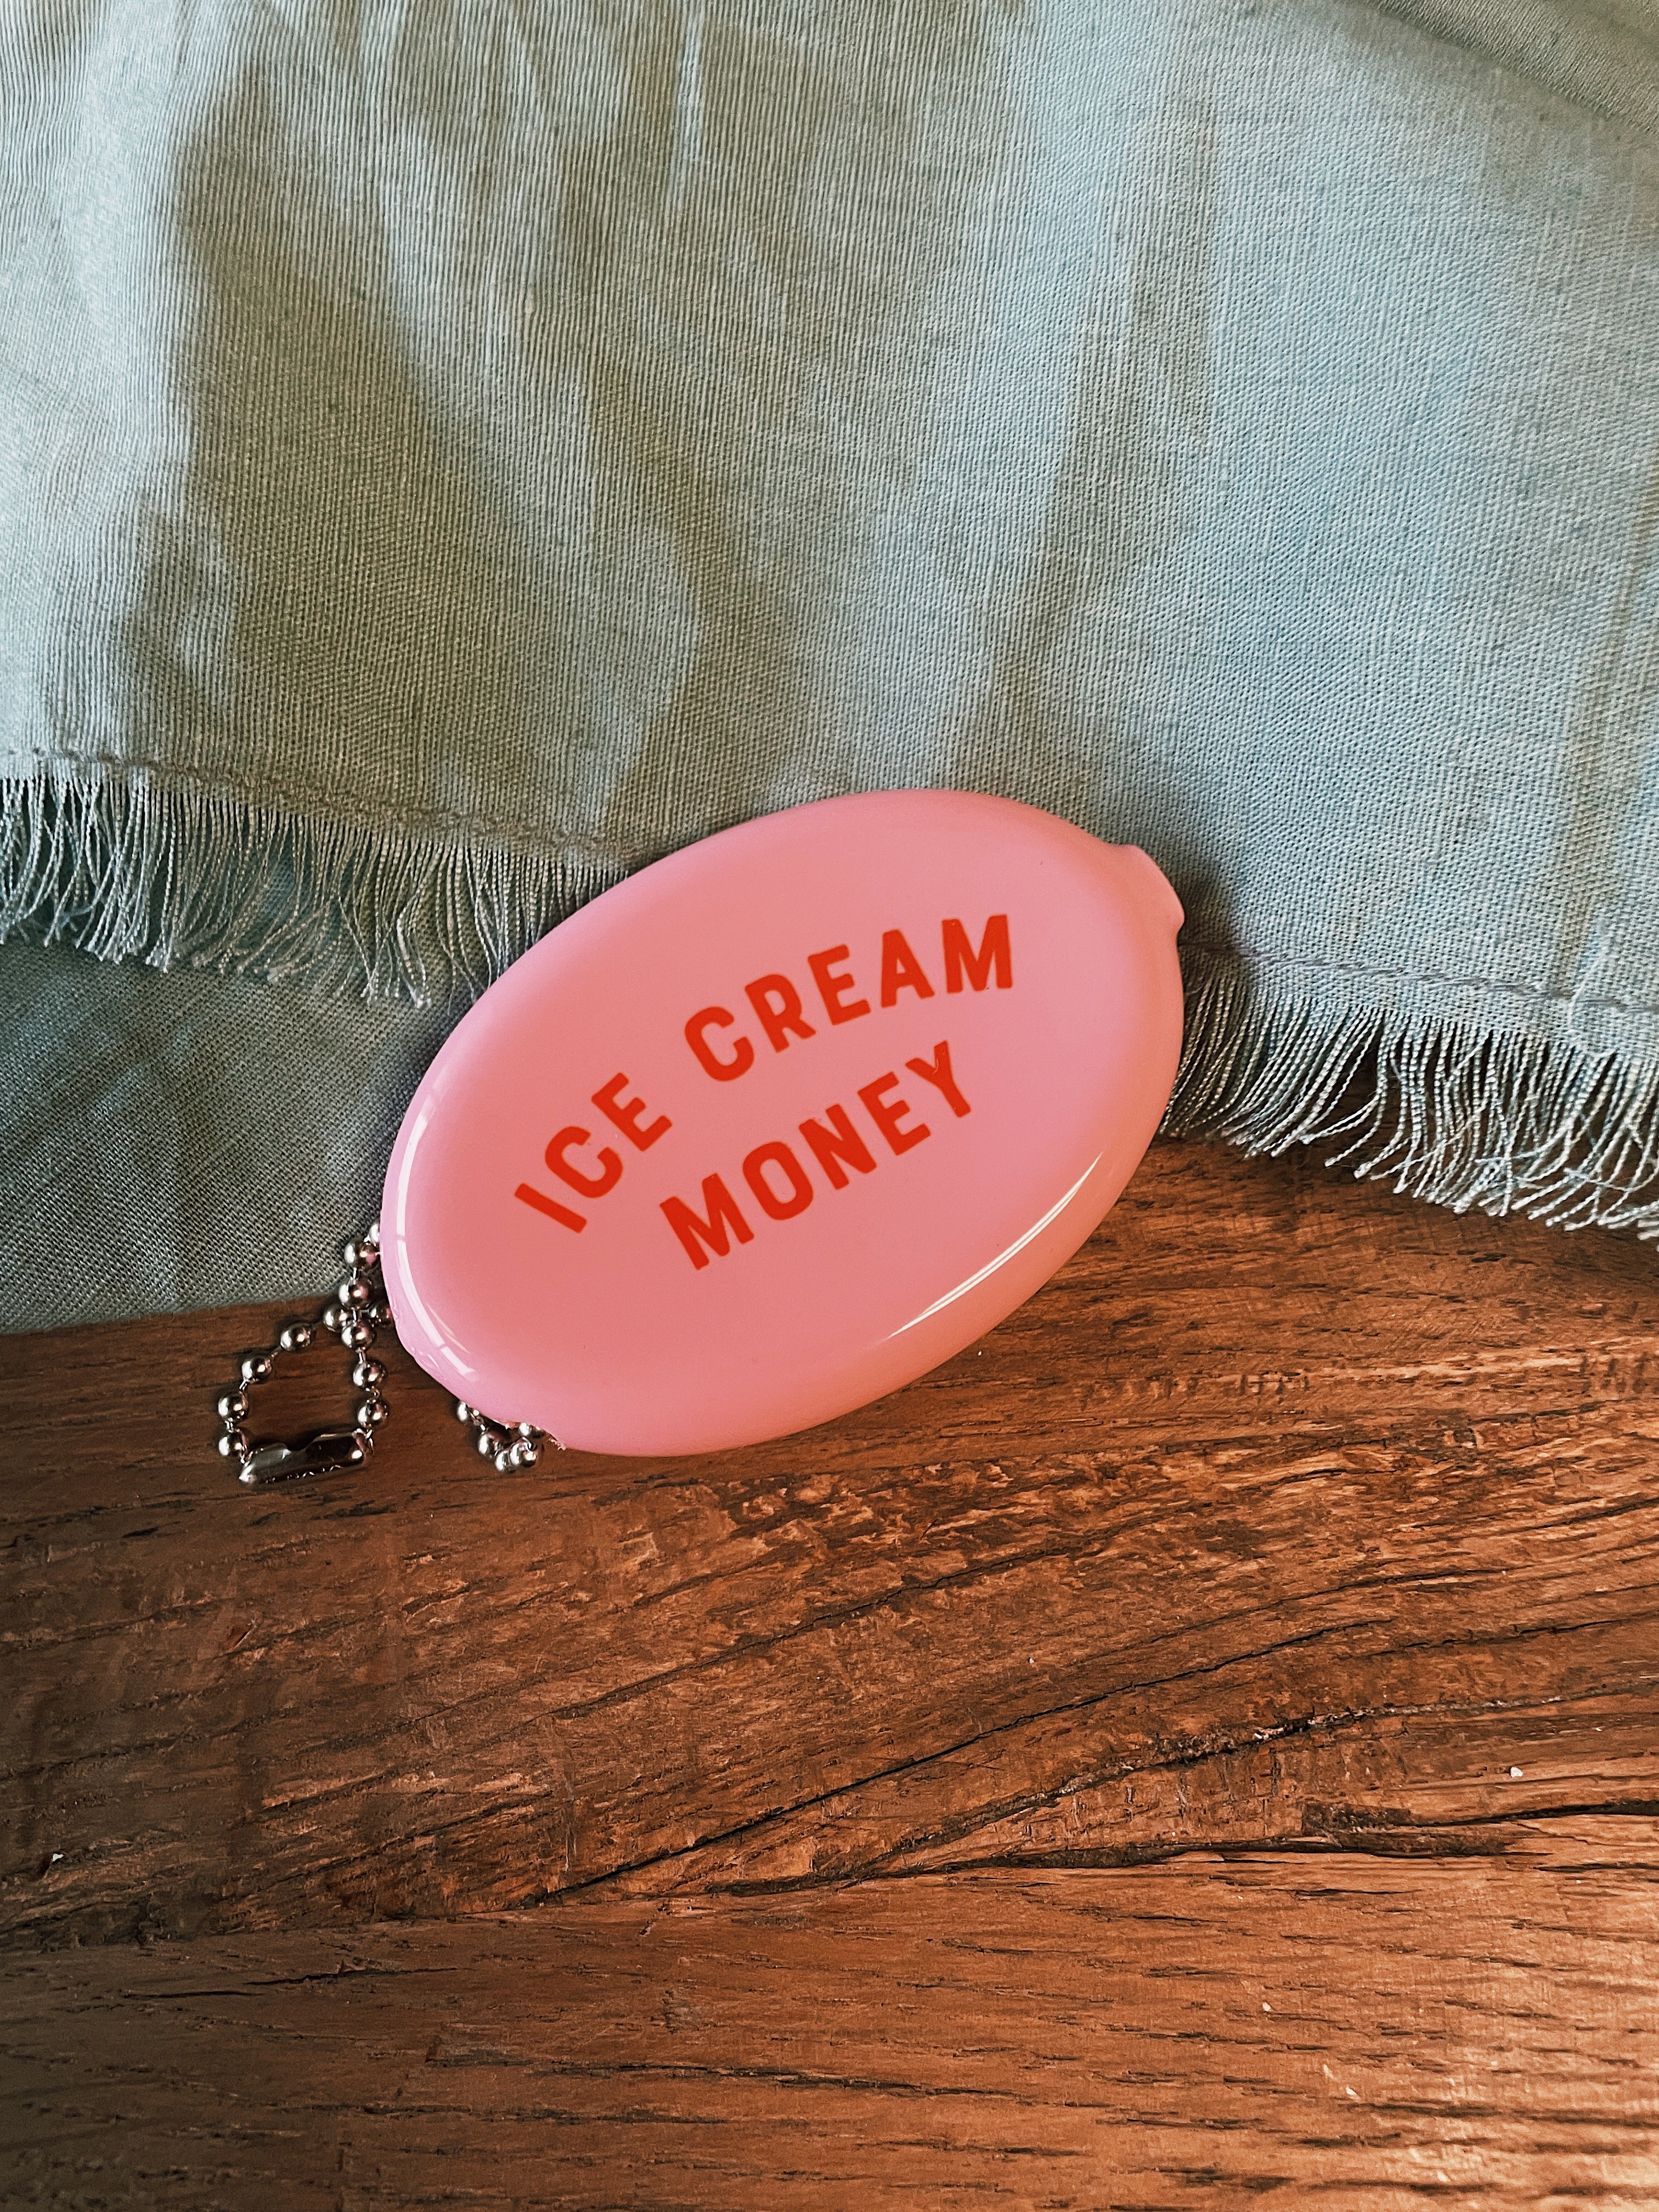 Coin Pouch - Ice Cream Money